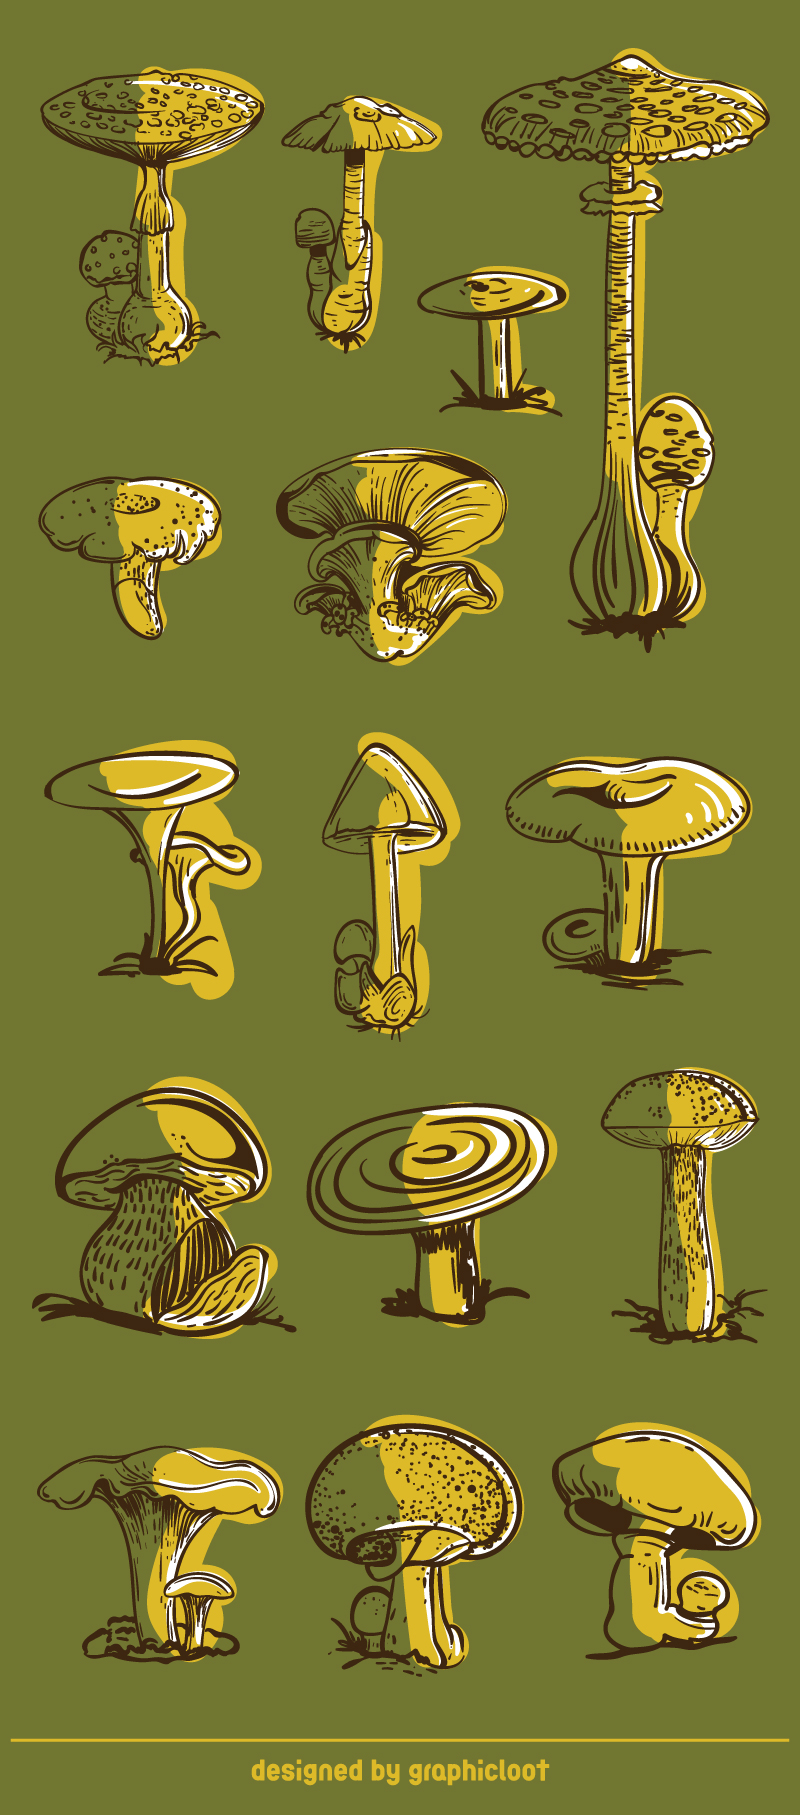 FREE Mushrooms